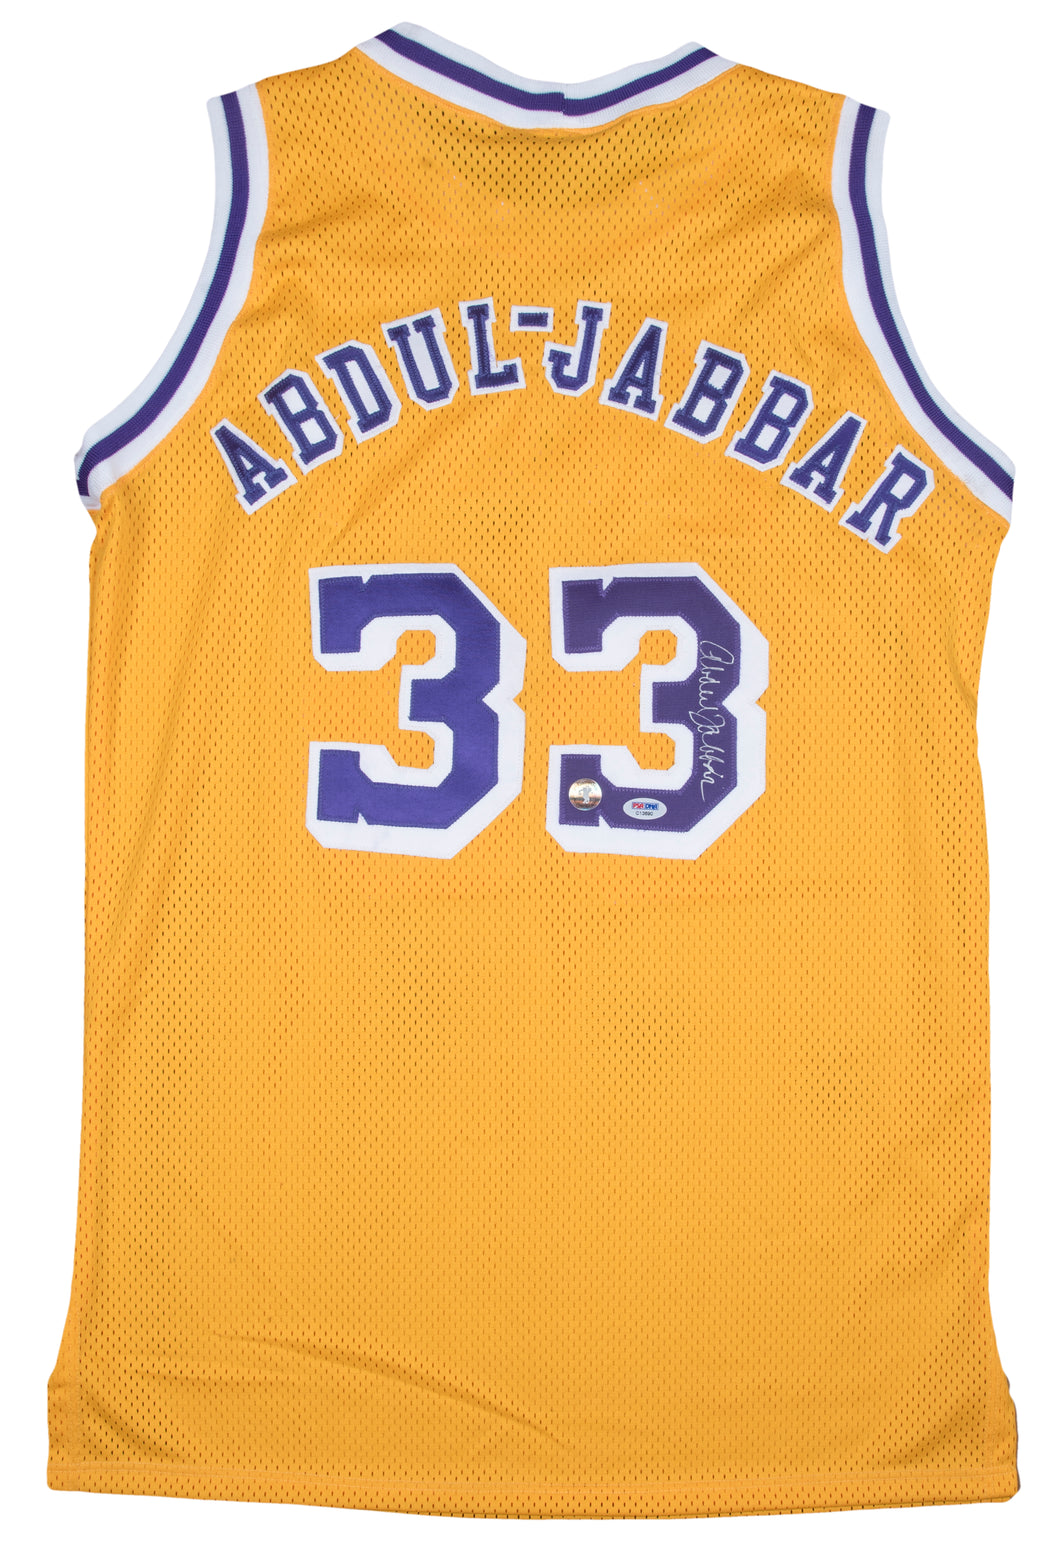 Kareem Abdul-Jabbar Autographed Lakers Jersey